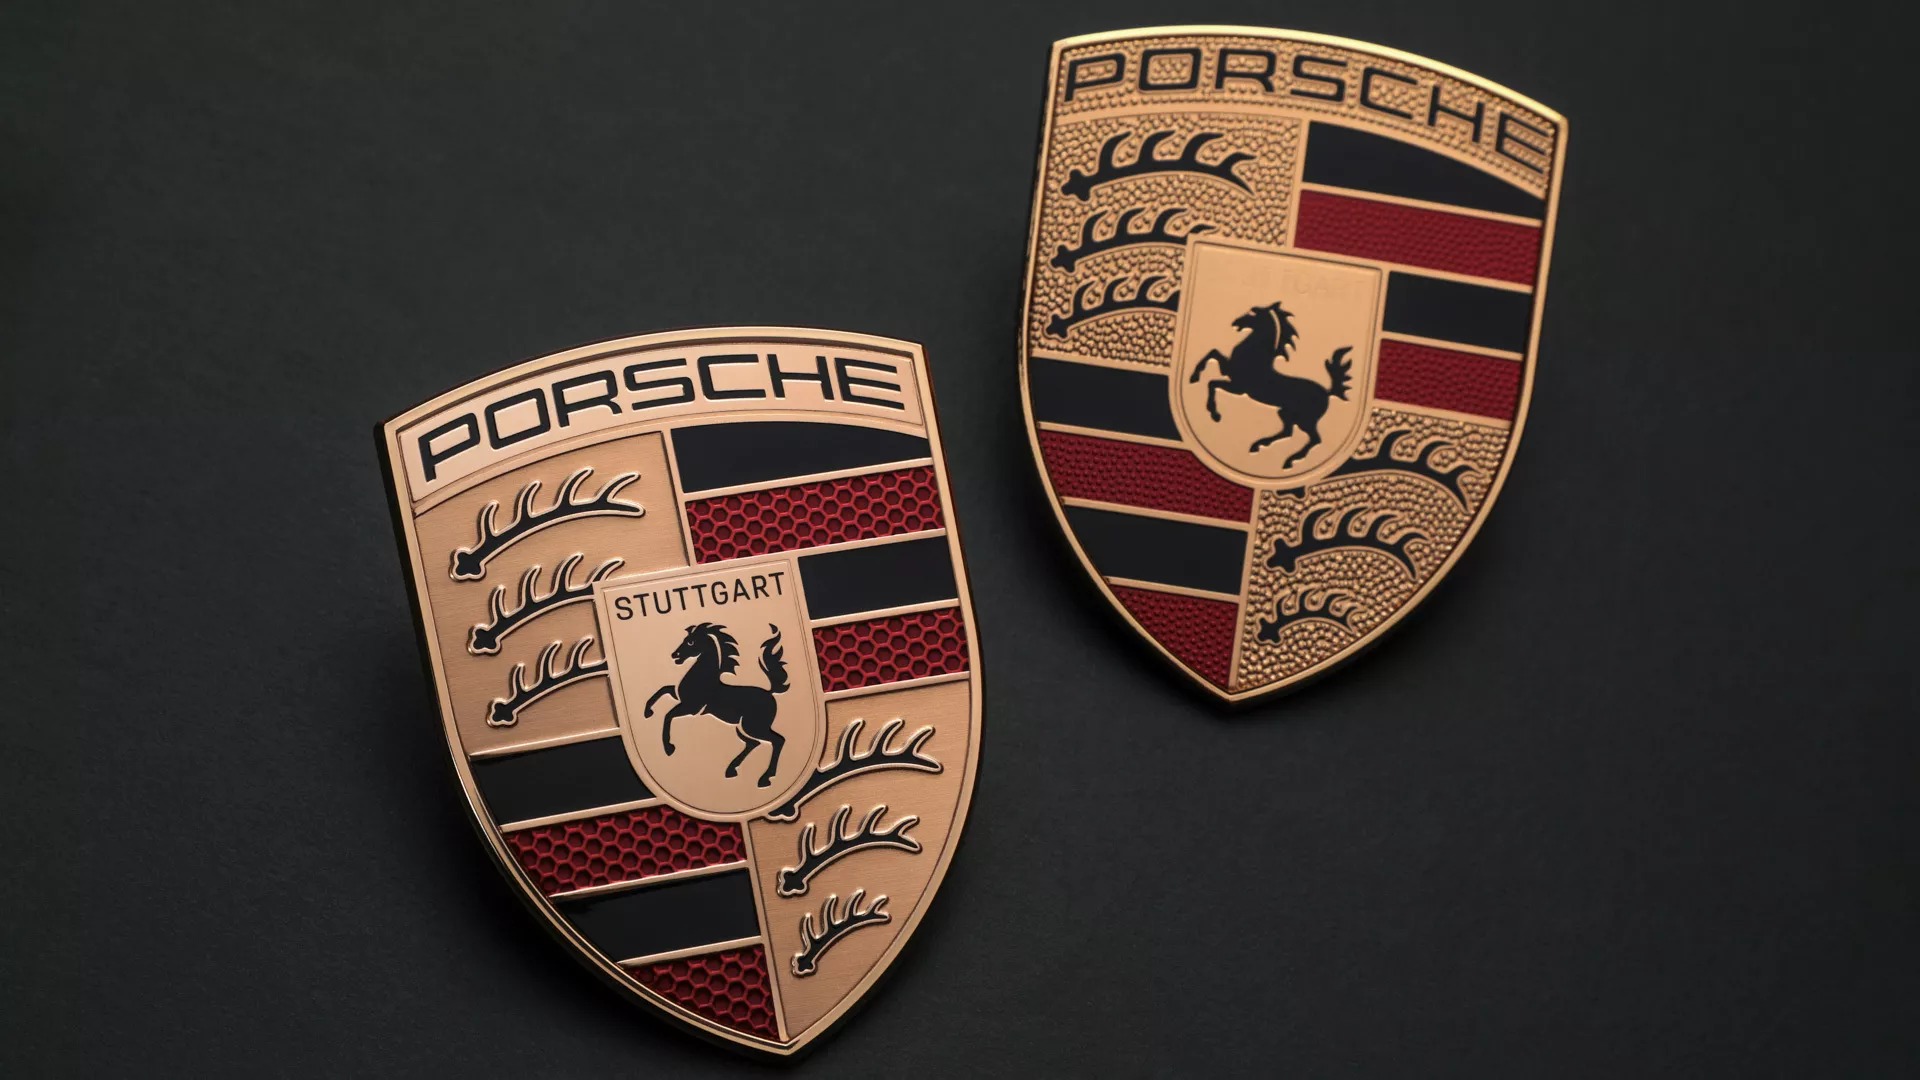 Porsche tốn 3 năm để làm logo mới nhưng phải tinh mắt lắm mới tìm ra điểm khác biệt - ảnh 1